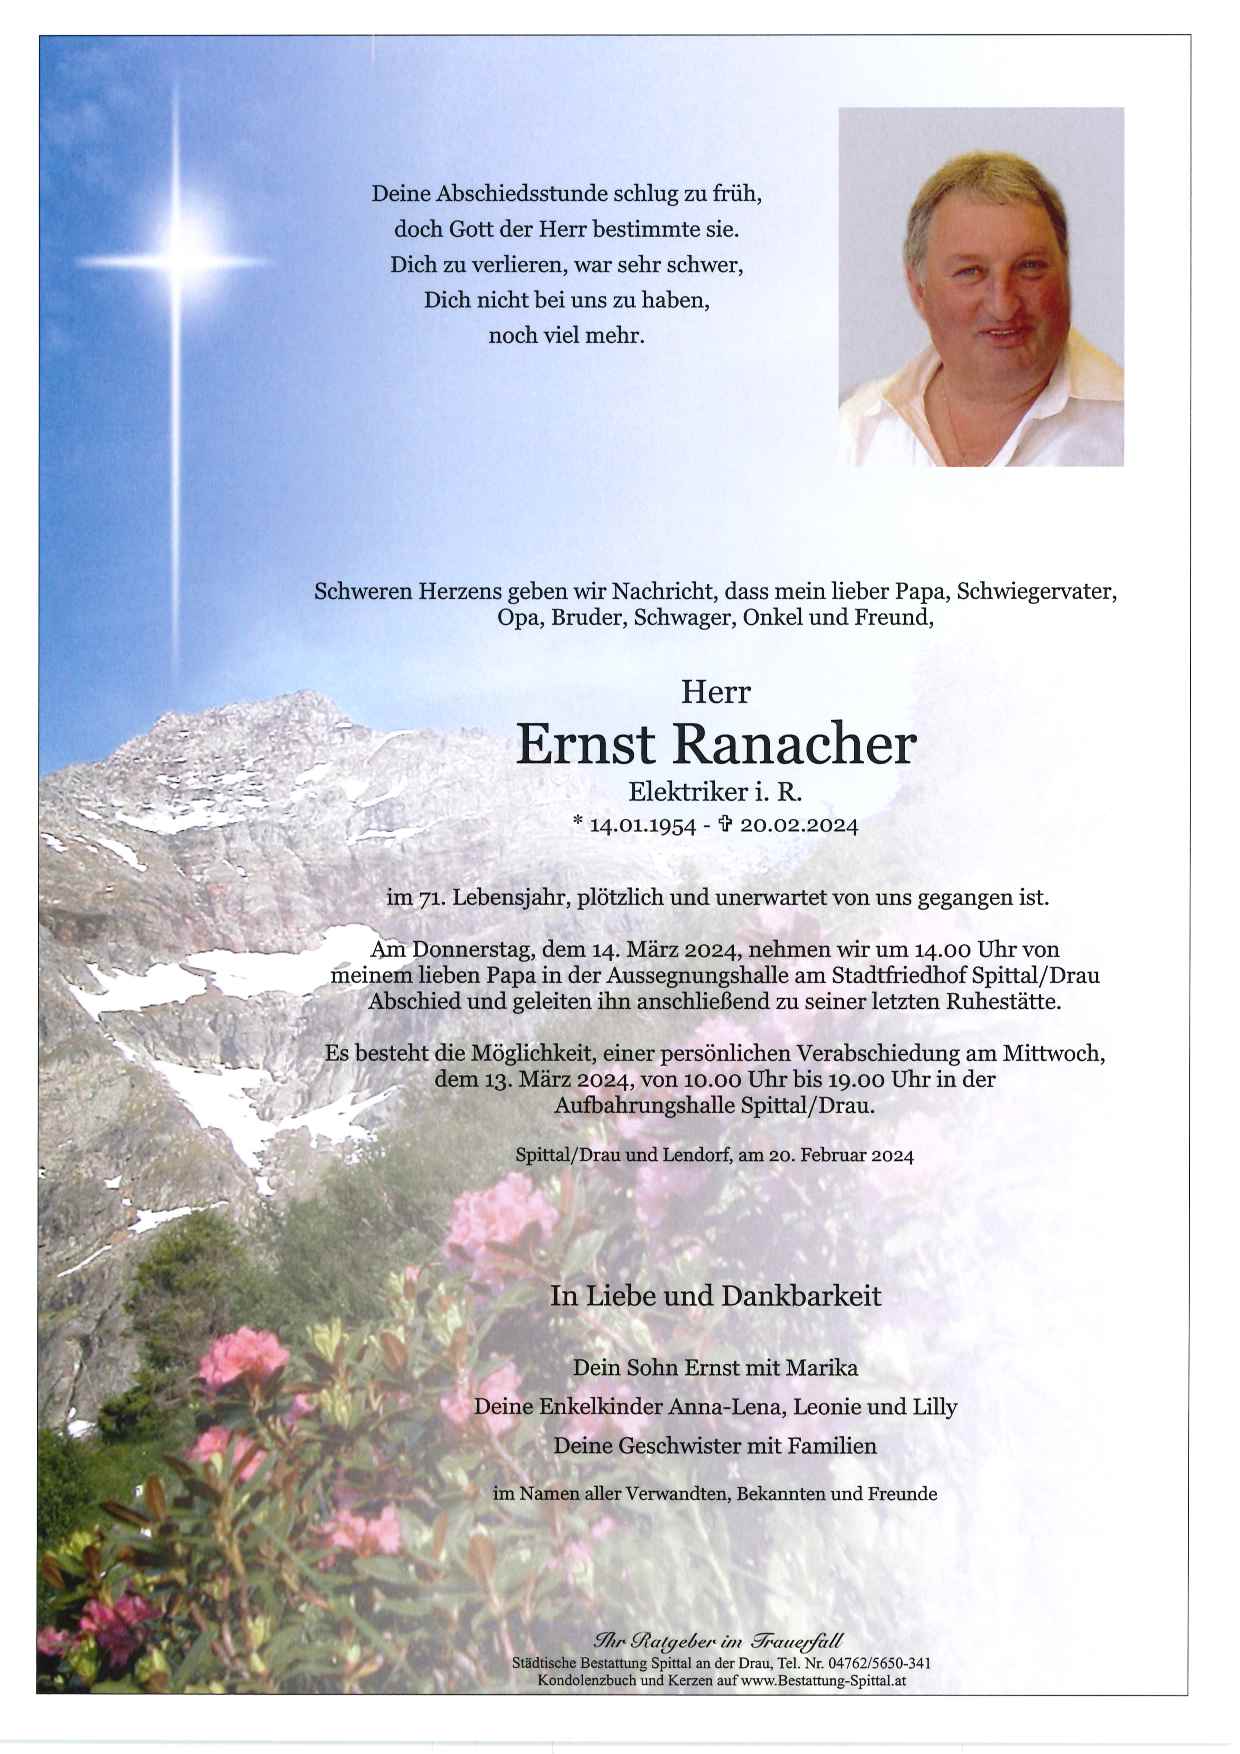 Ernst Ranacher